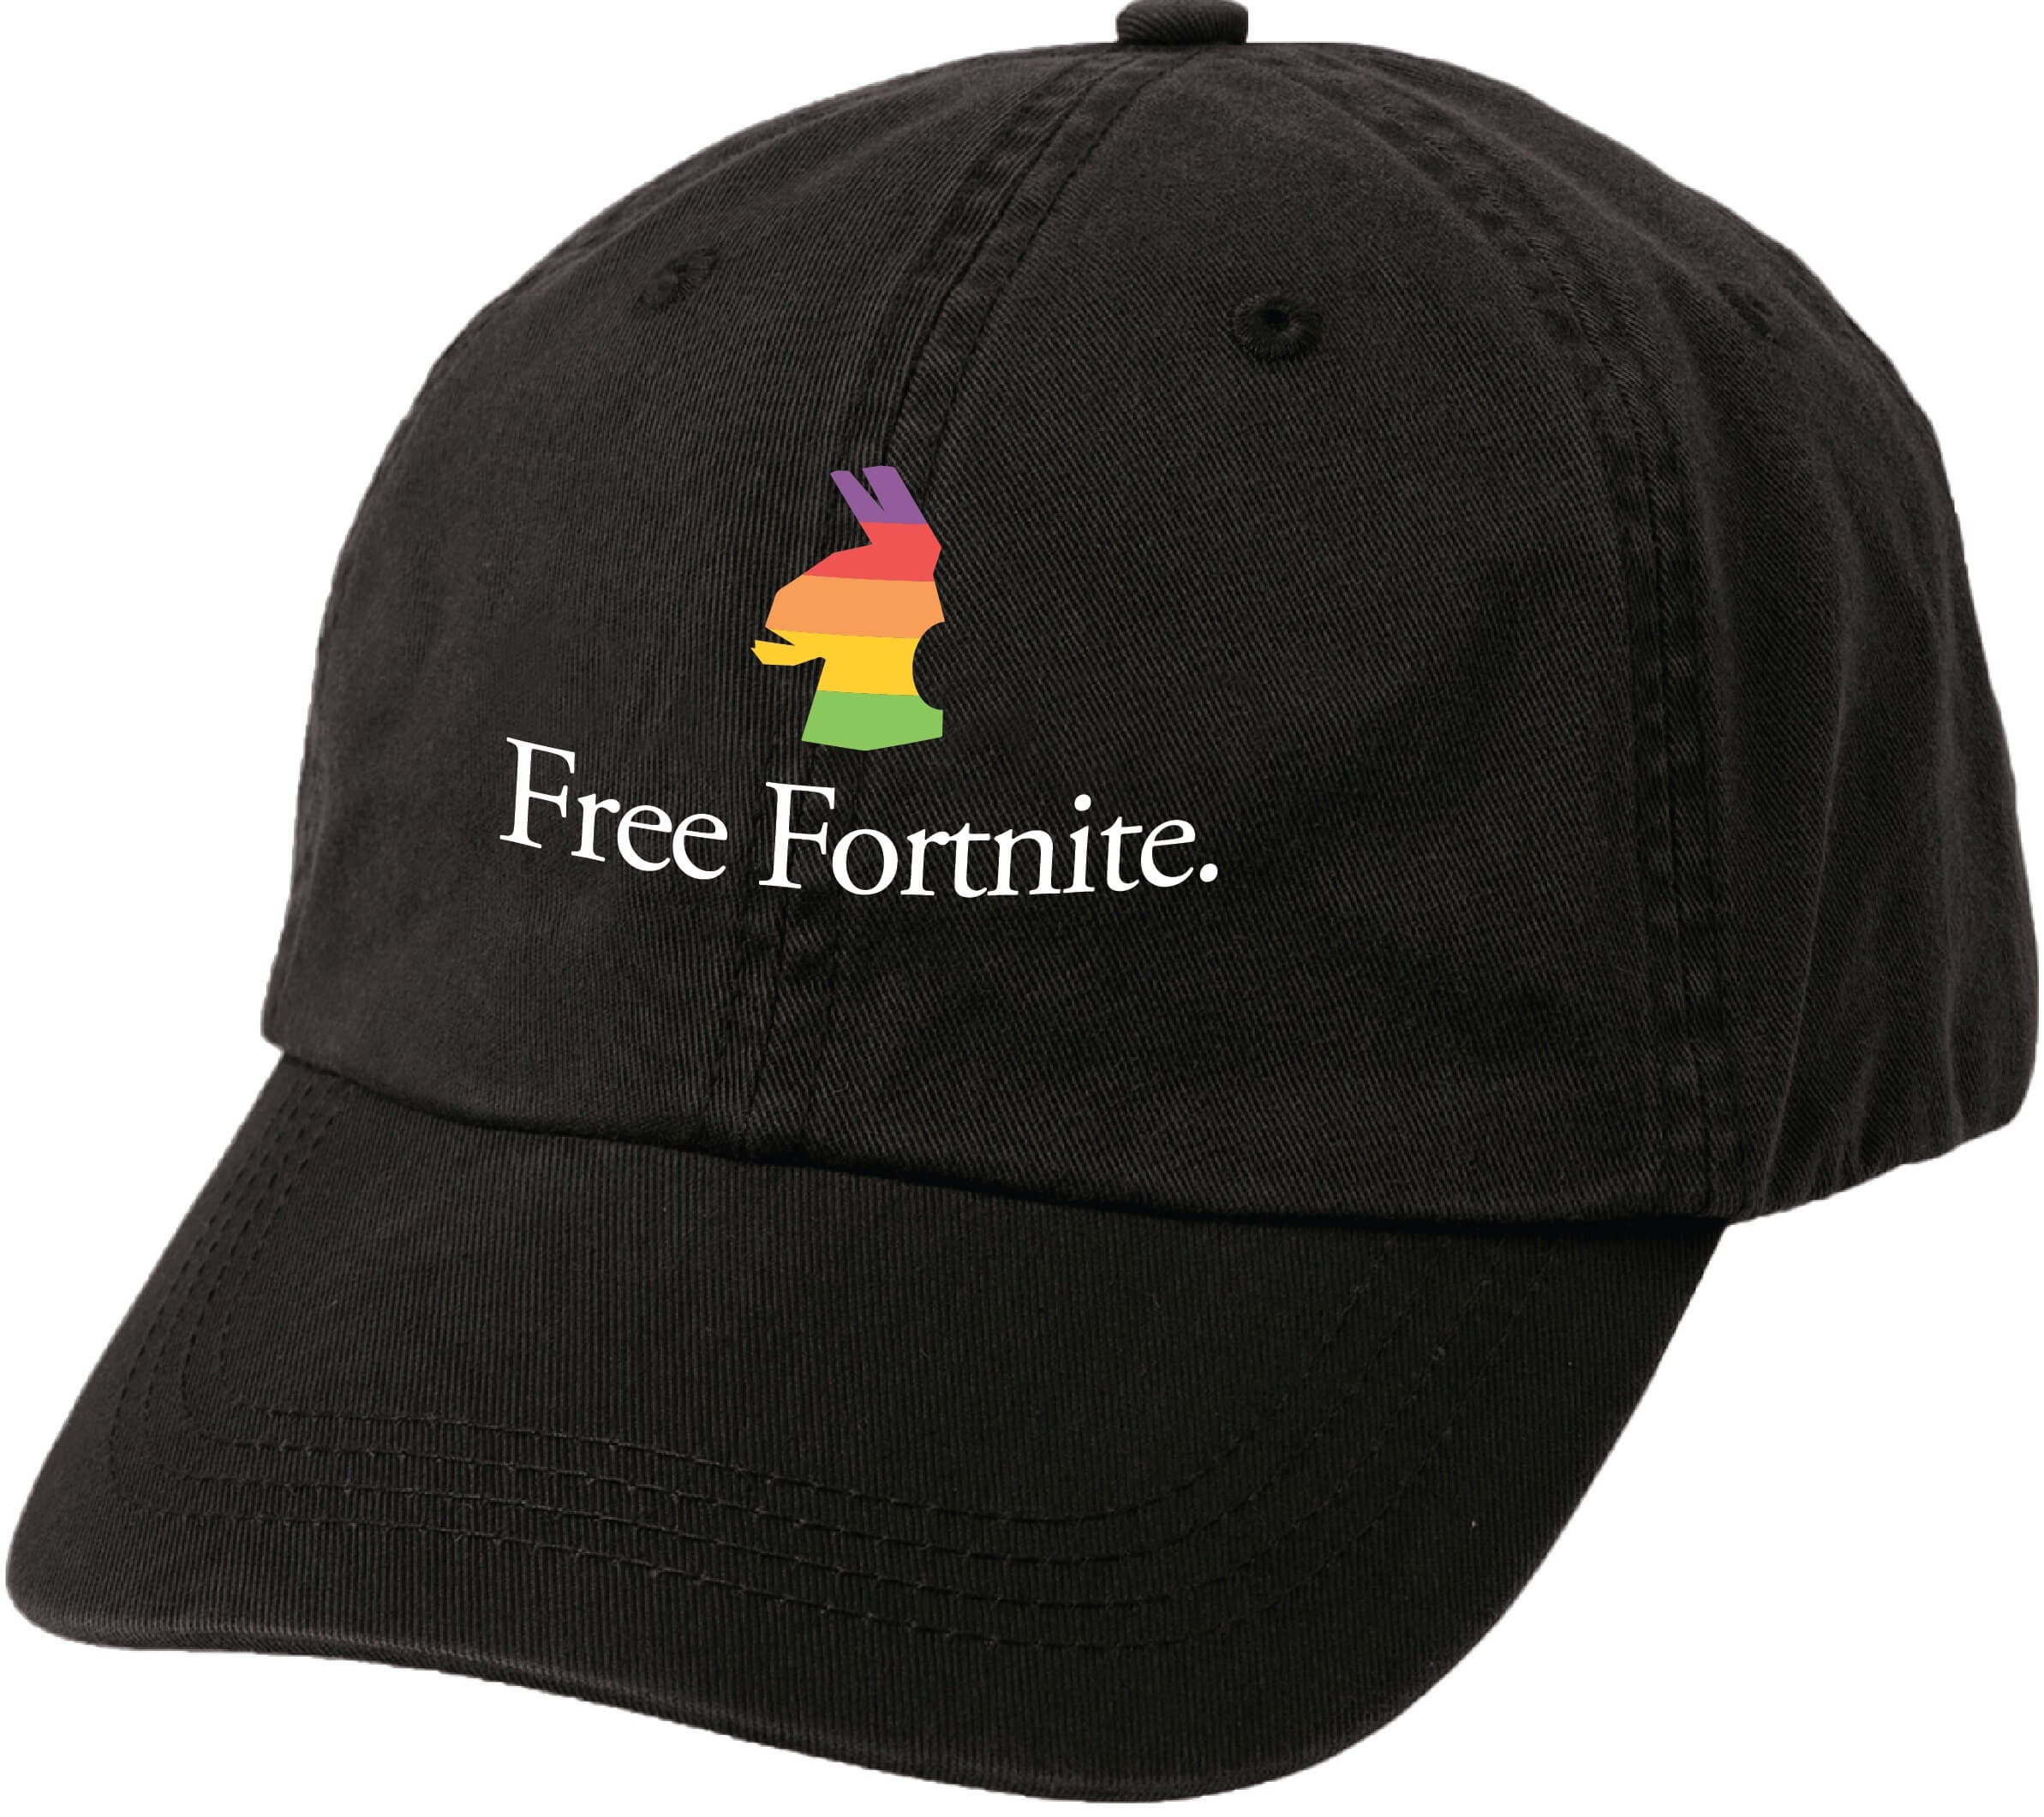 Freefortnite Adjustable Hat